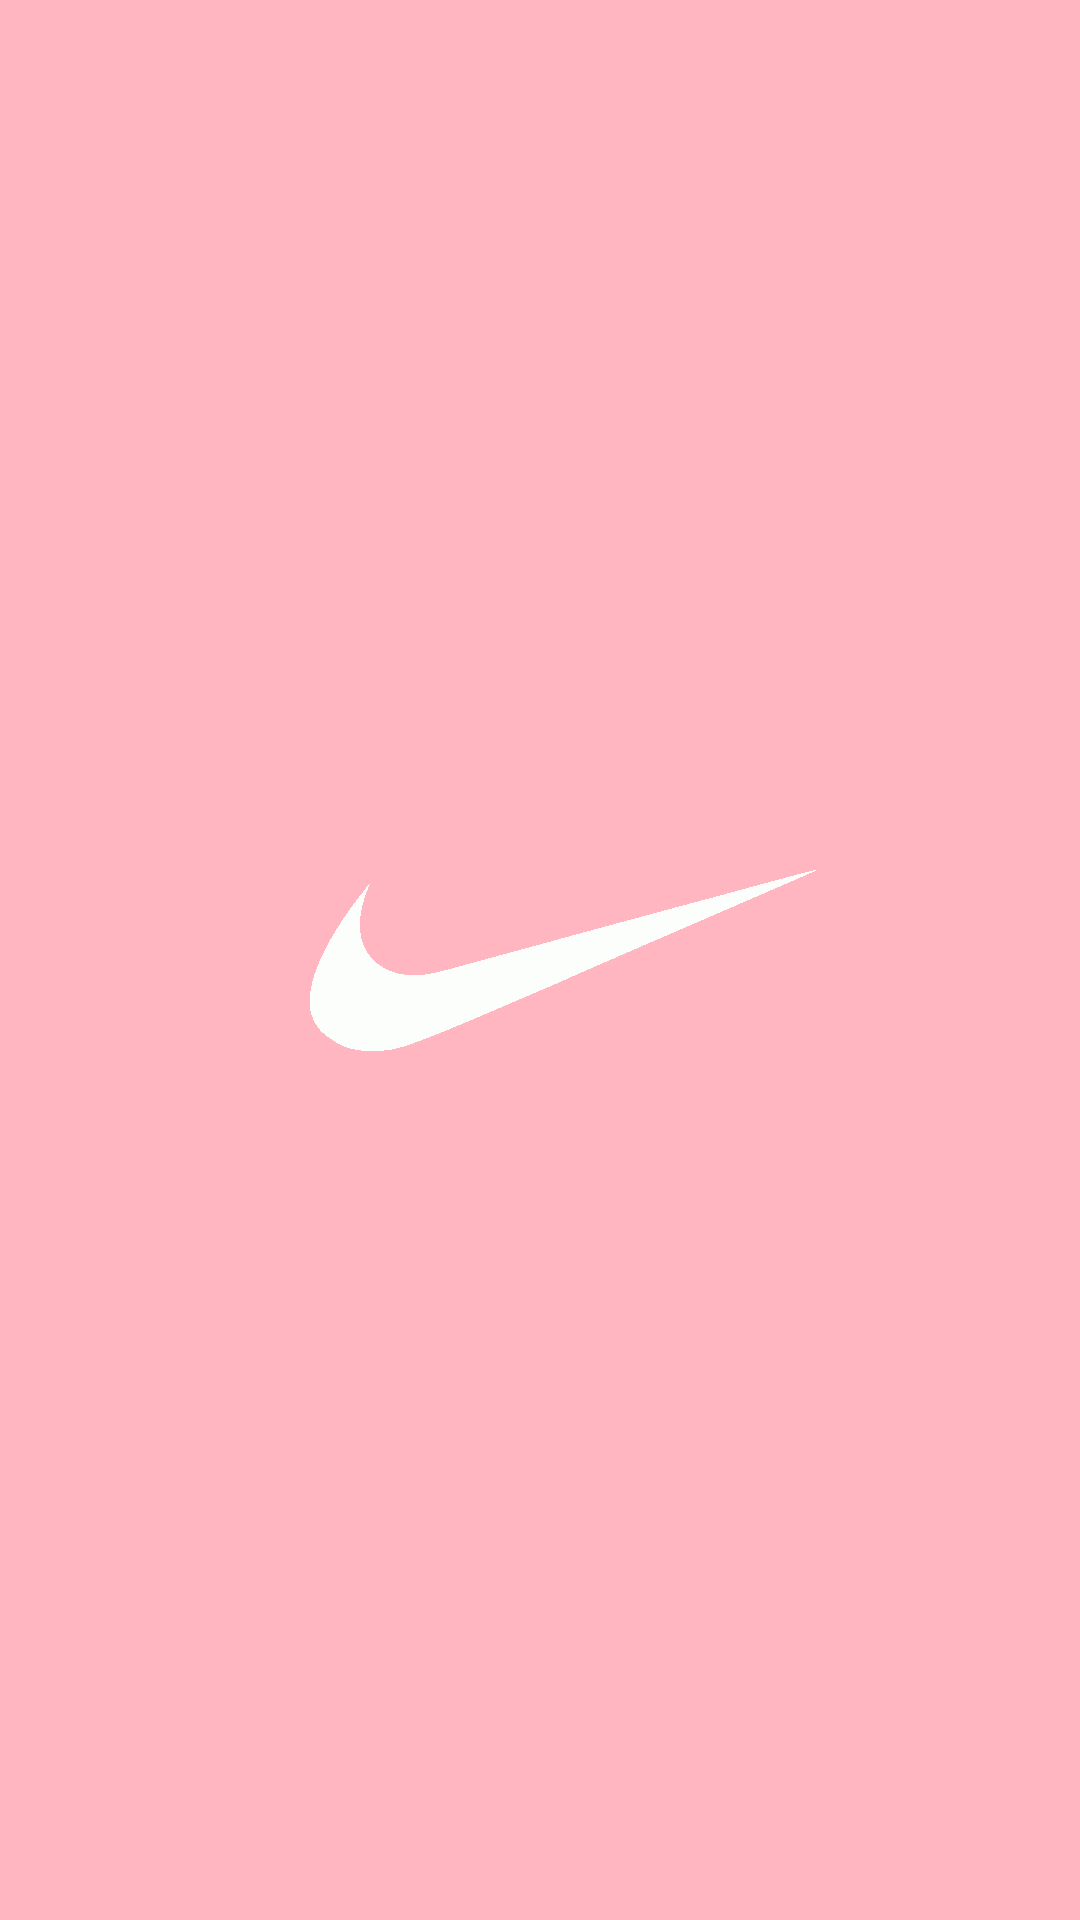 Pastel Pink Tumblr Wallpapers